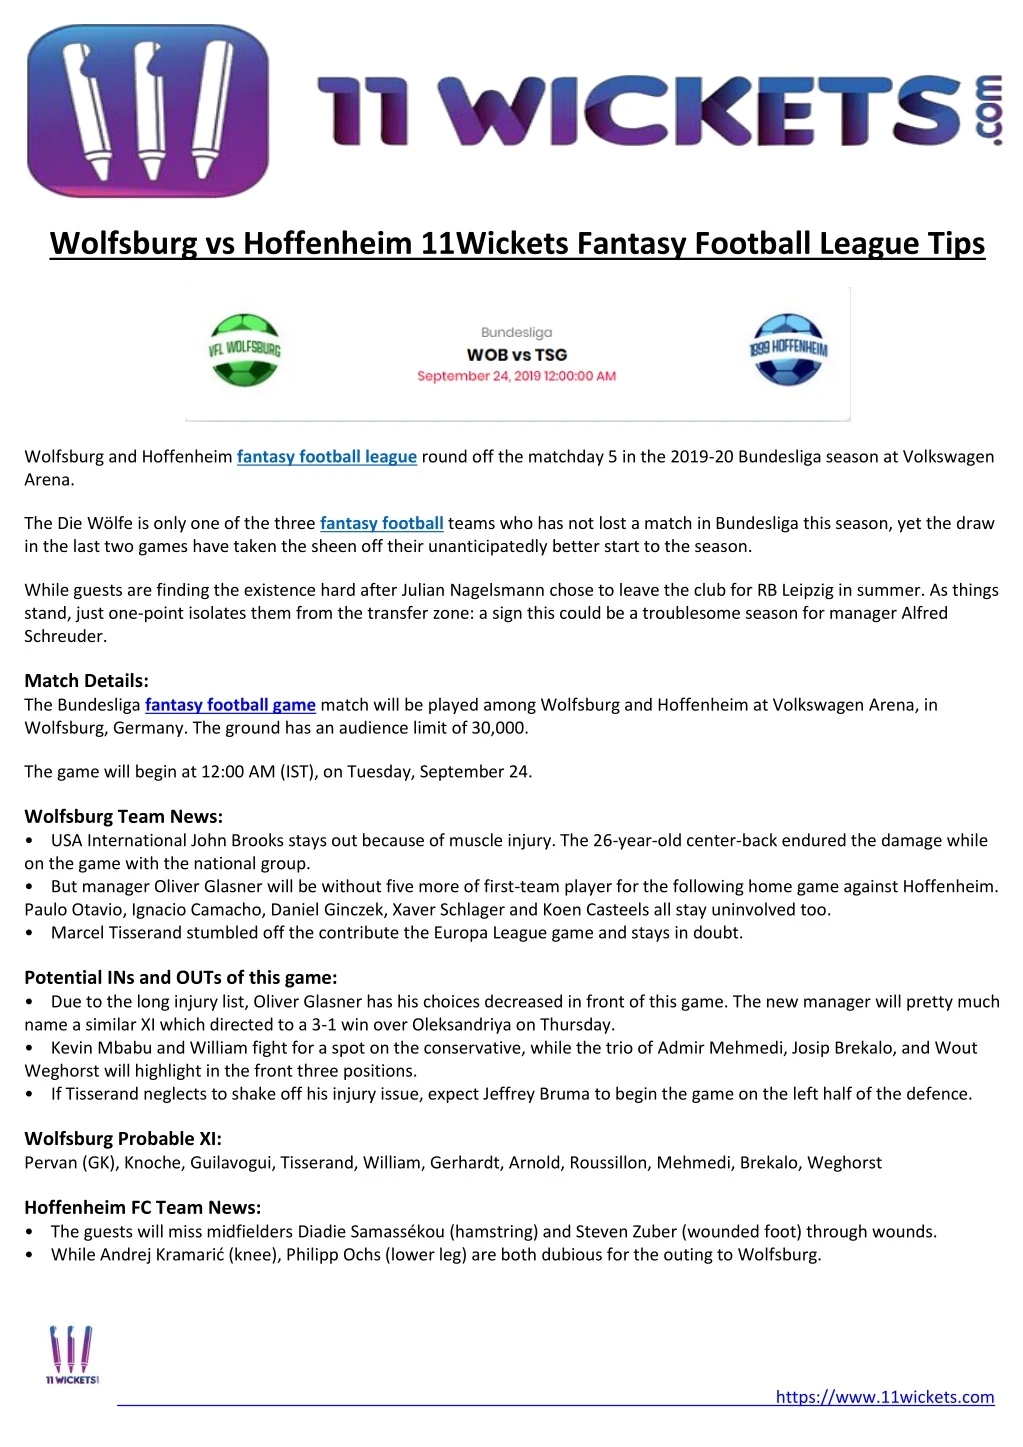 wolfsburg vs hoffenheim 11wickets fantasy